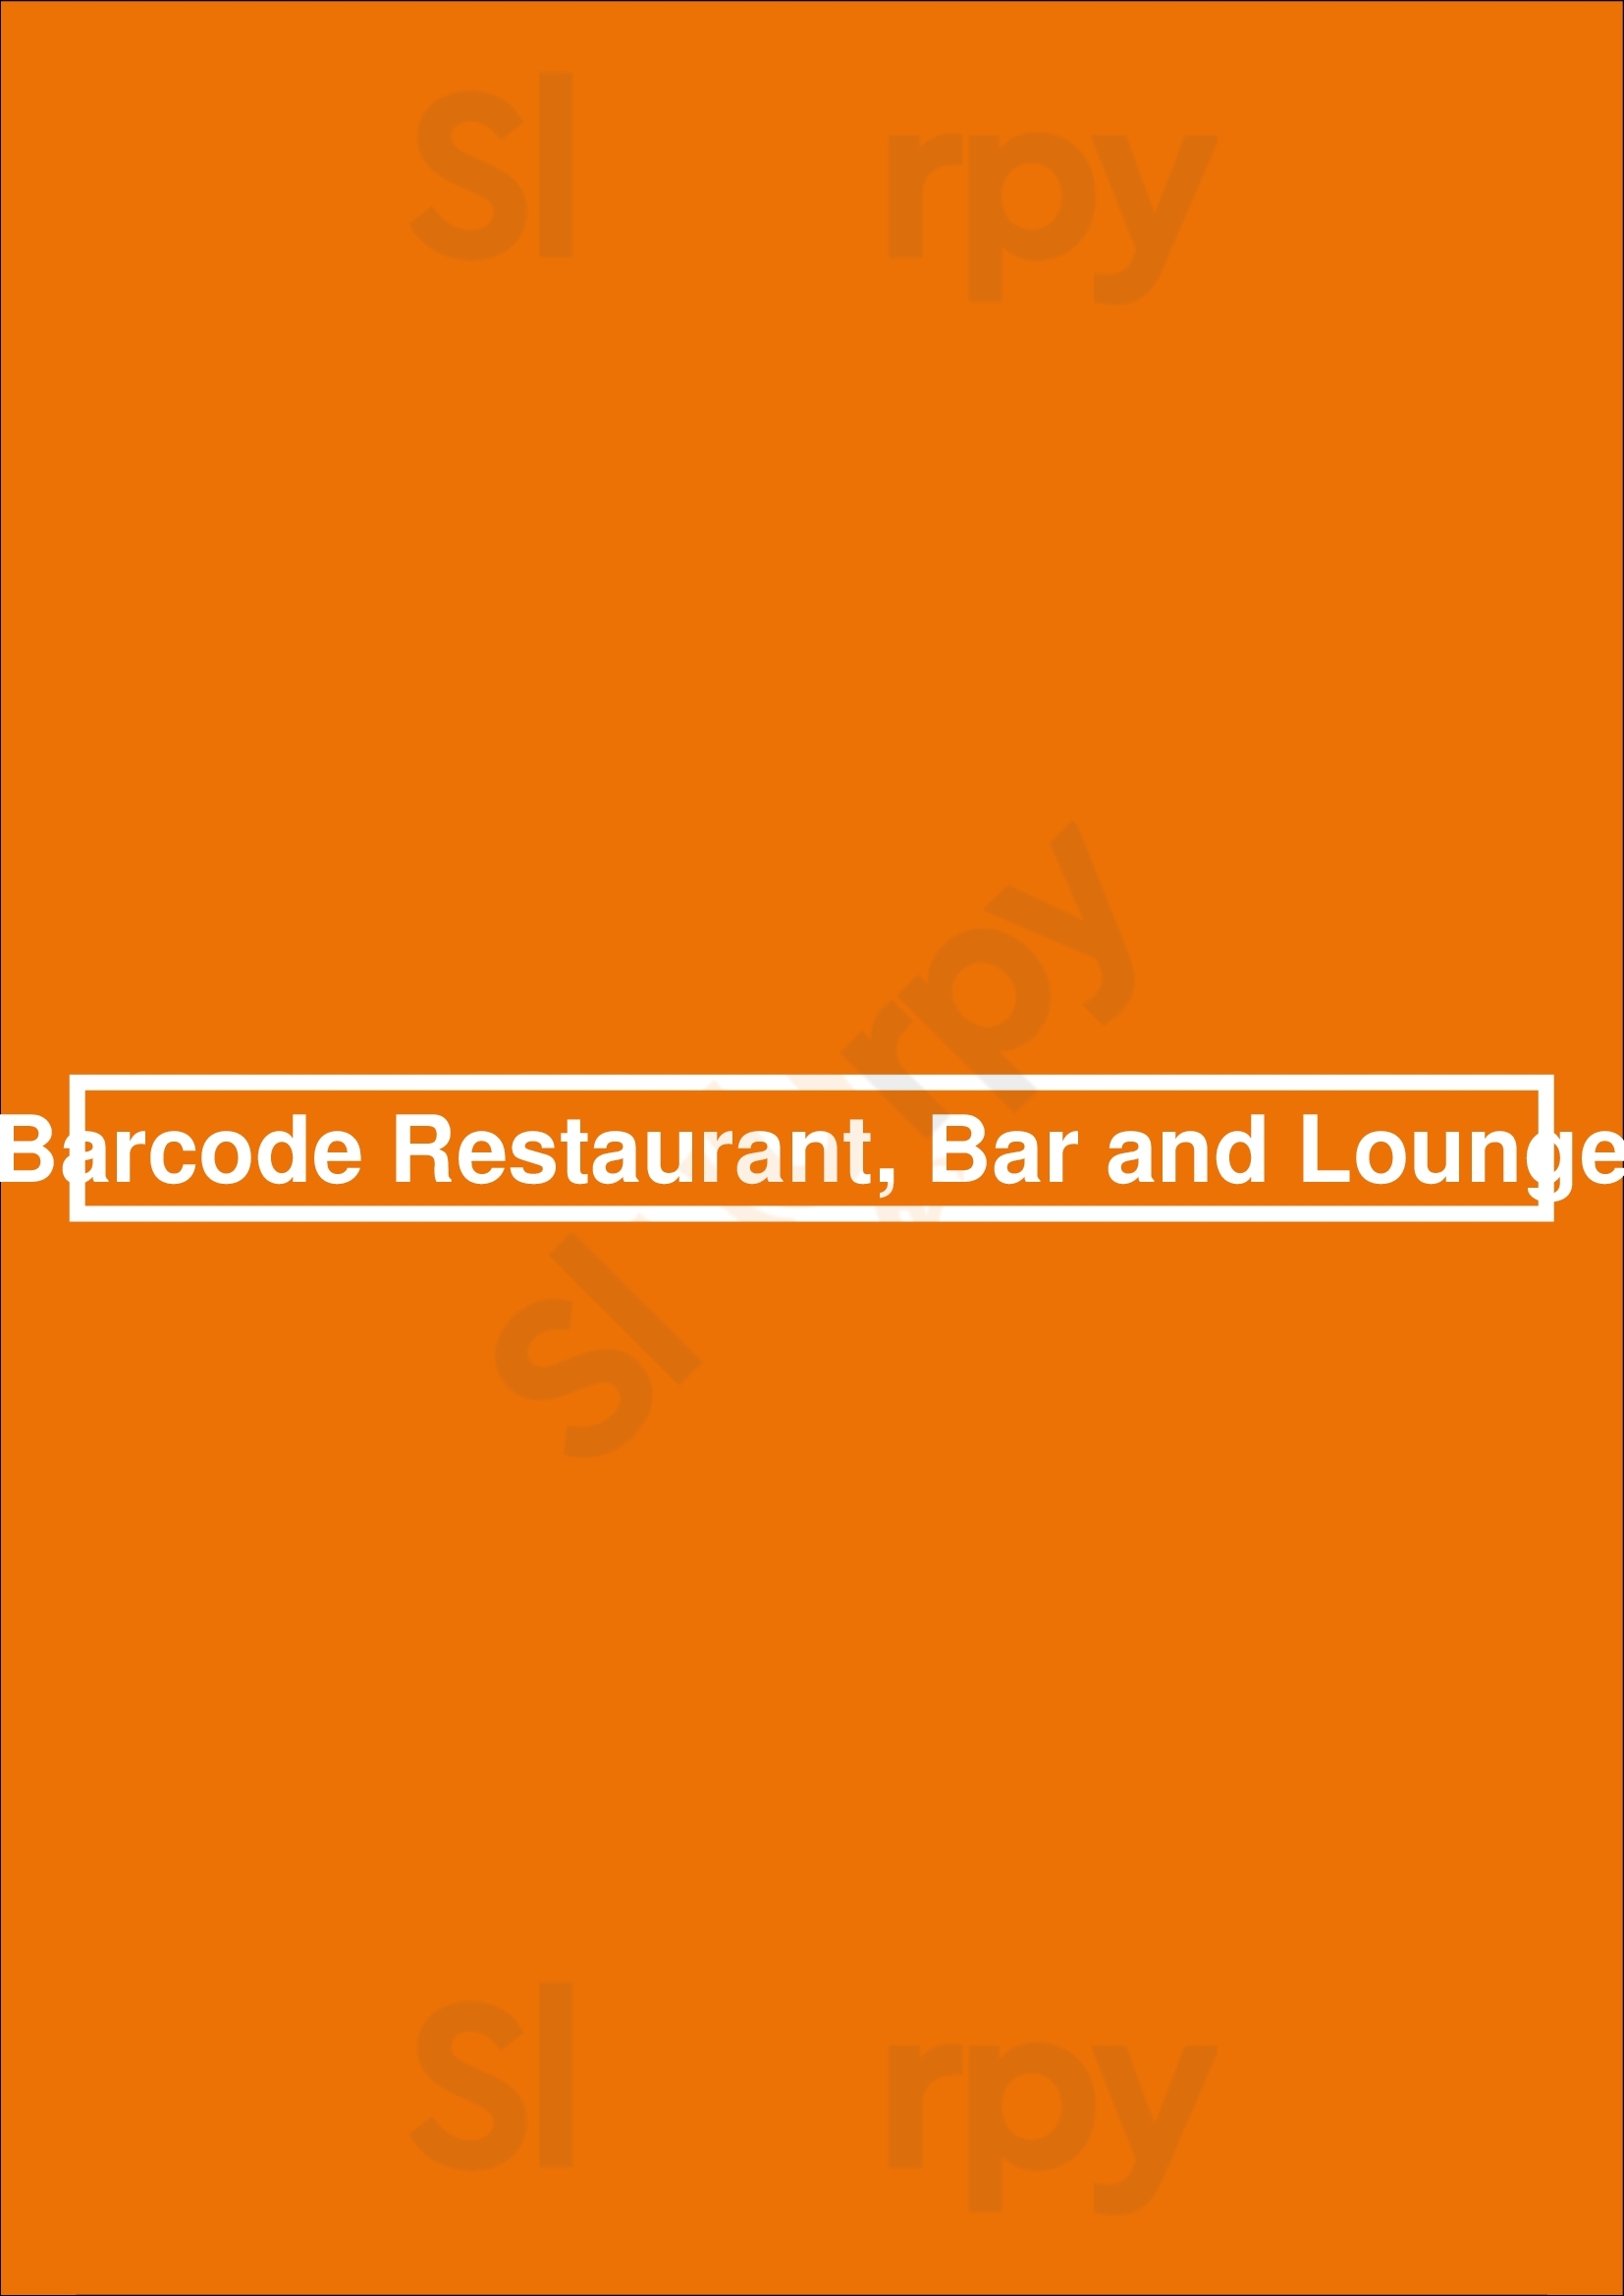 Barcode Restaurant, Bar And Lounge Washington DC Menu - 1